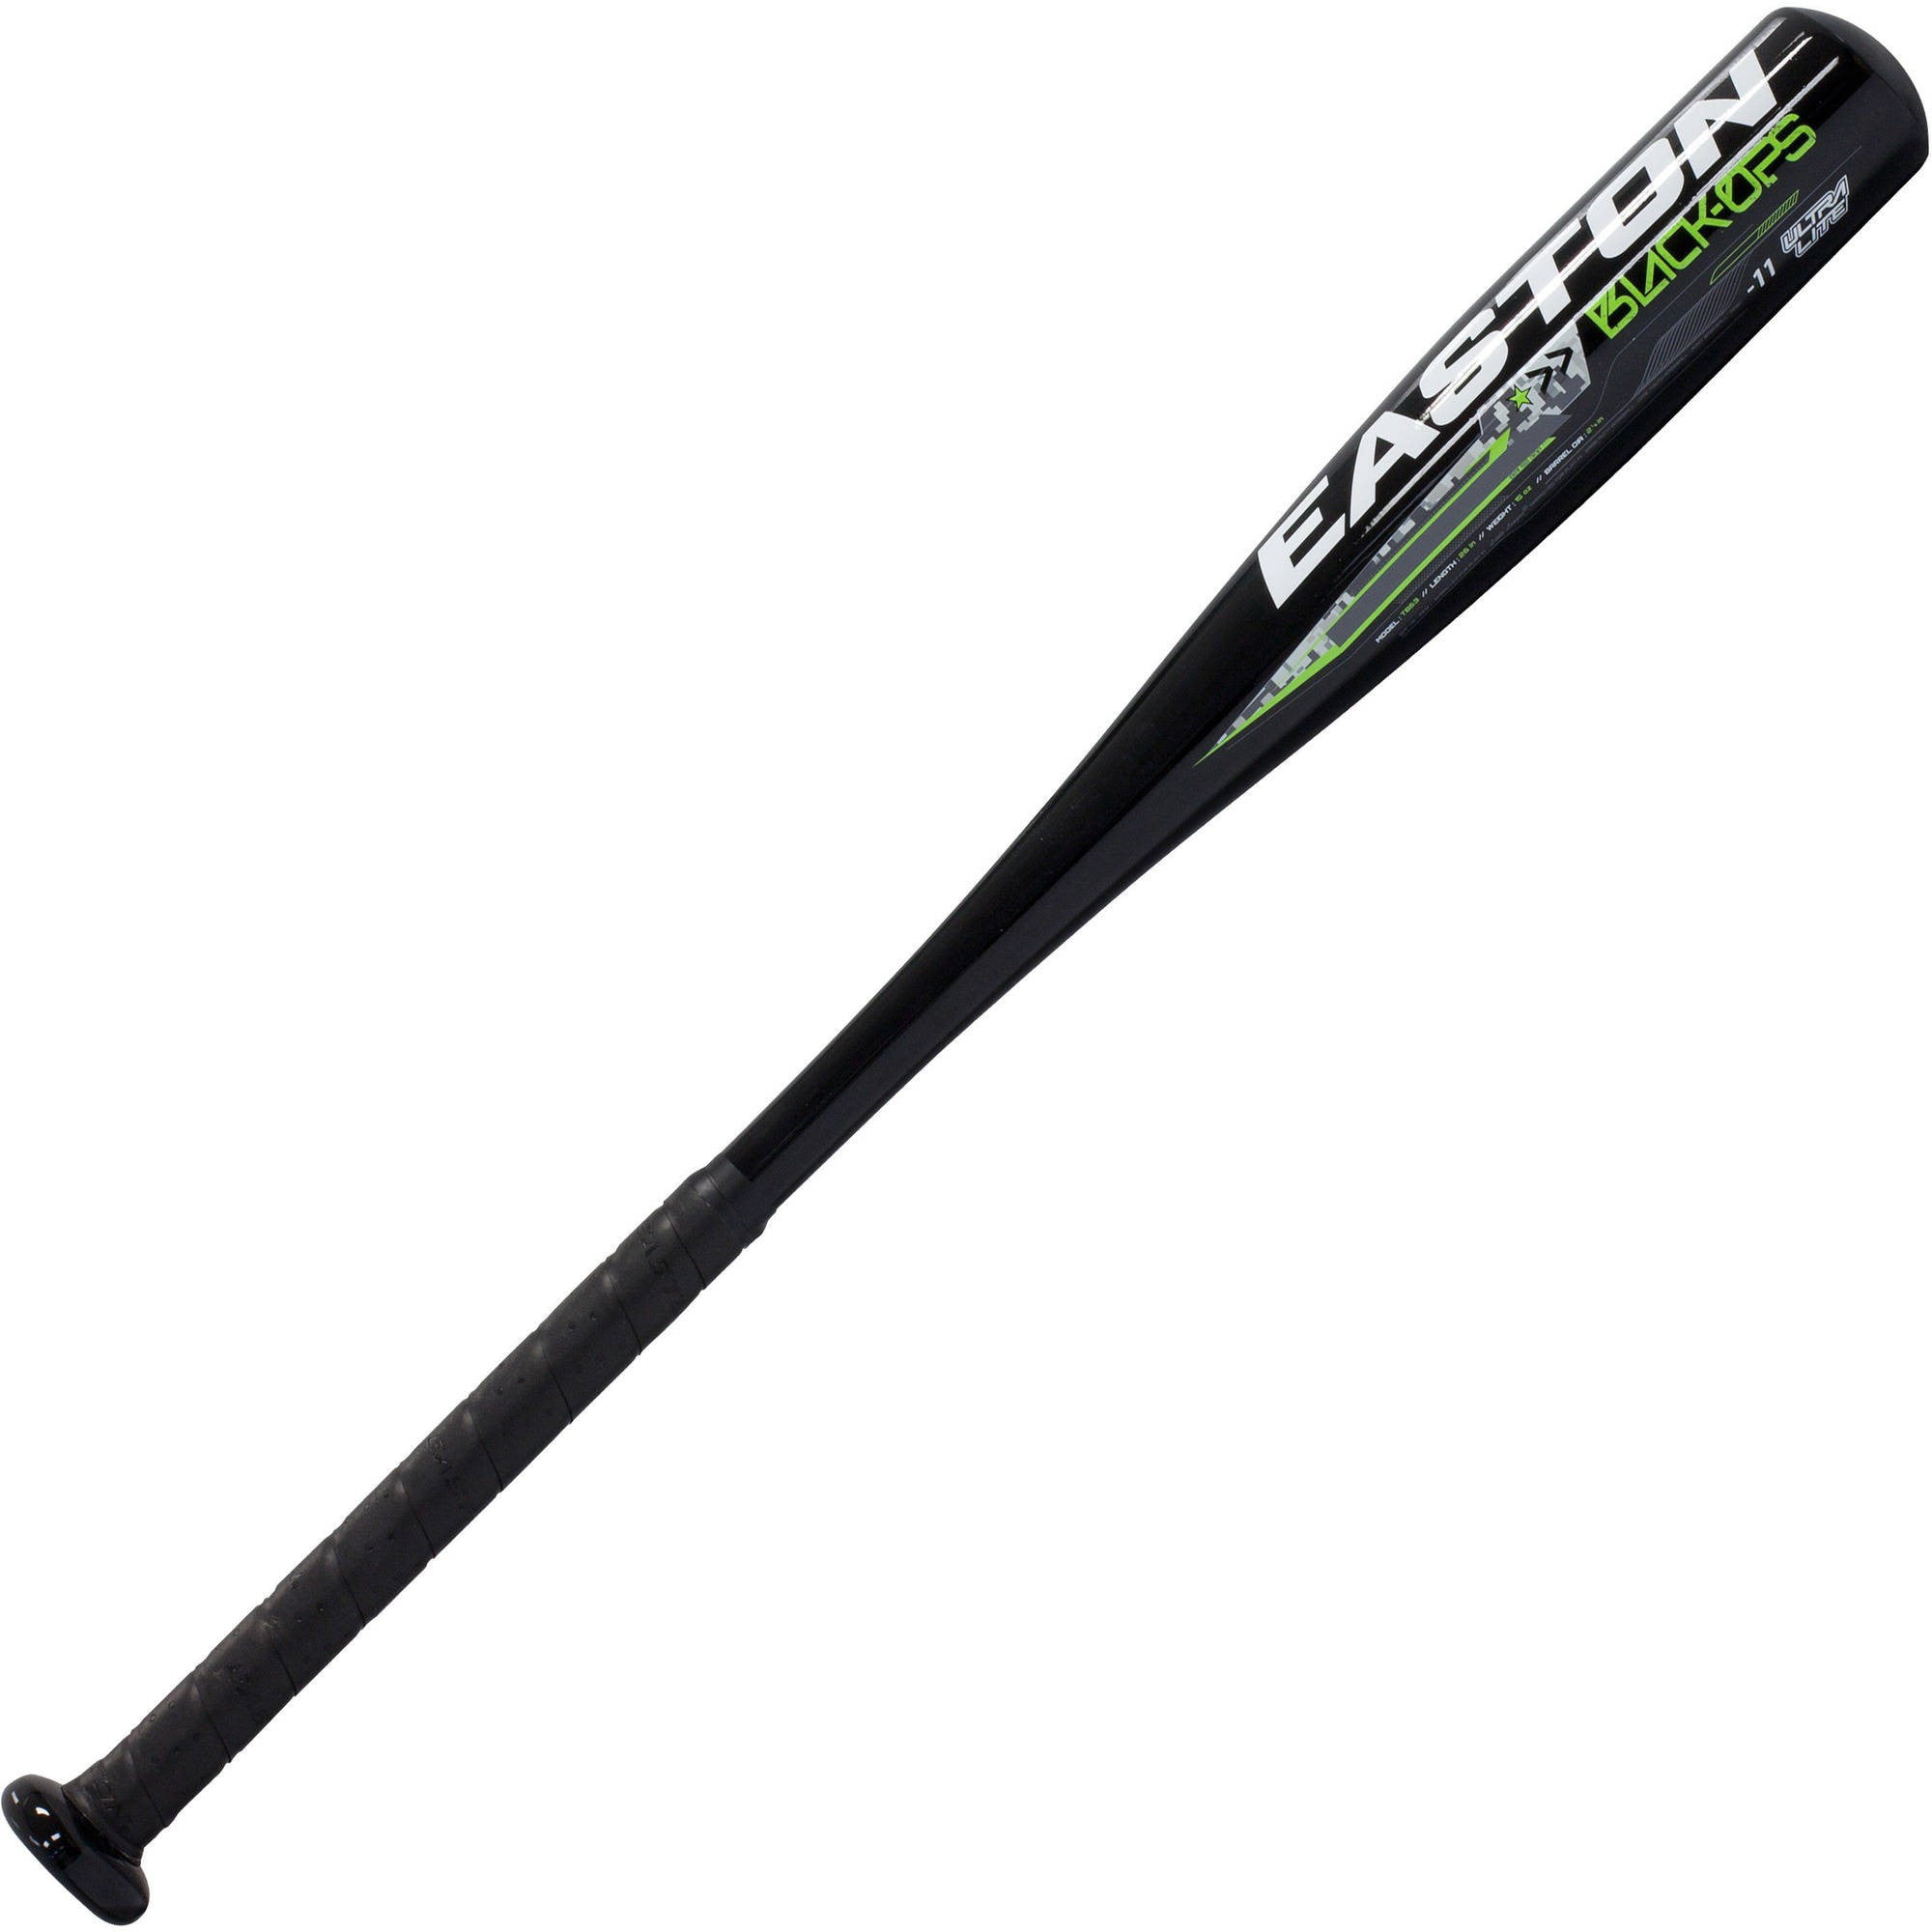 NWT lot of 5 Easton choke-up for baseball bat color black 